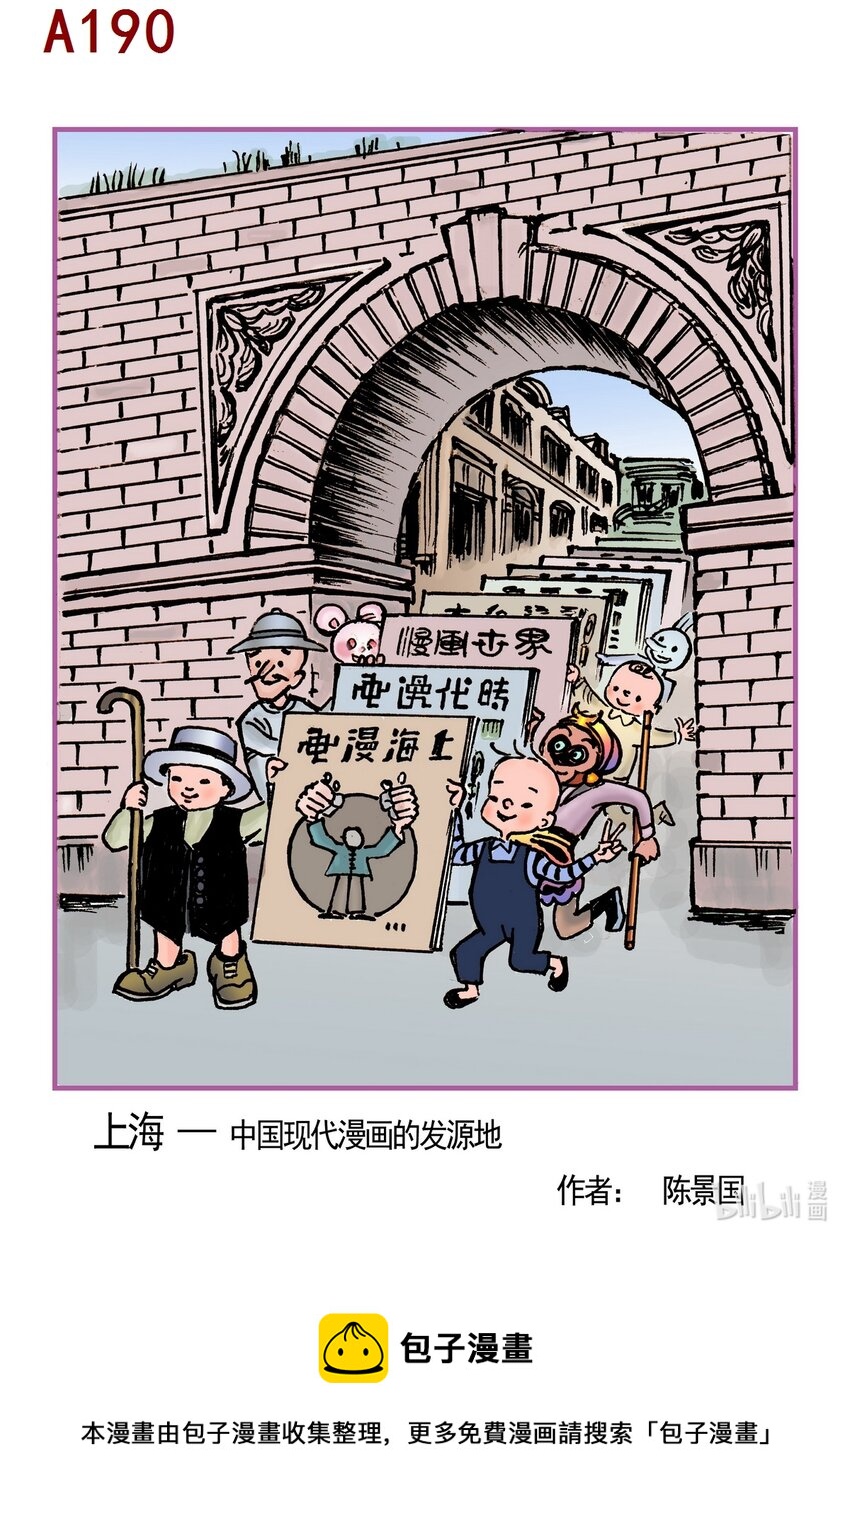 喜欢上海的理由 - 陈景国 上海-中国现代漫画的发源地 - 1